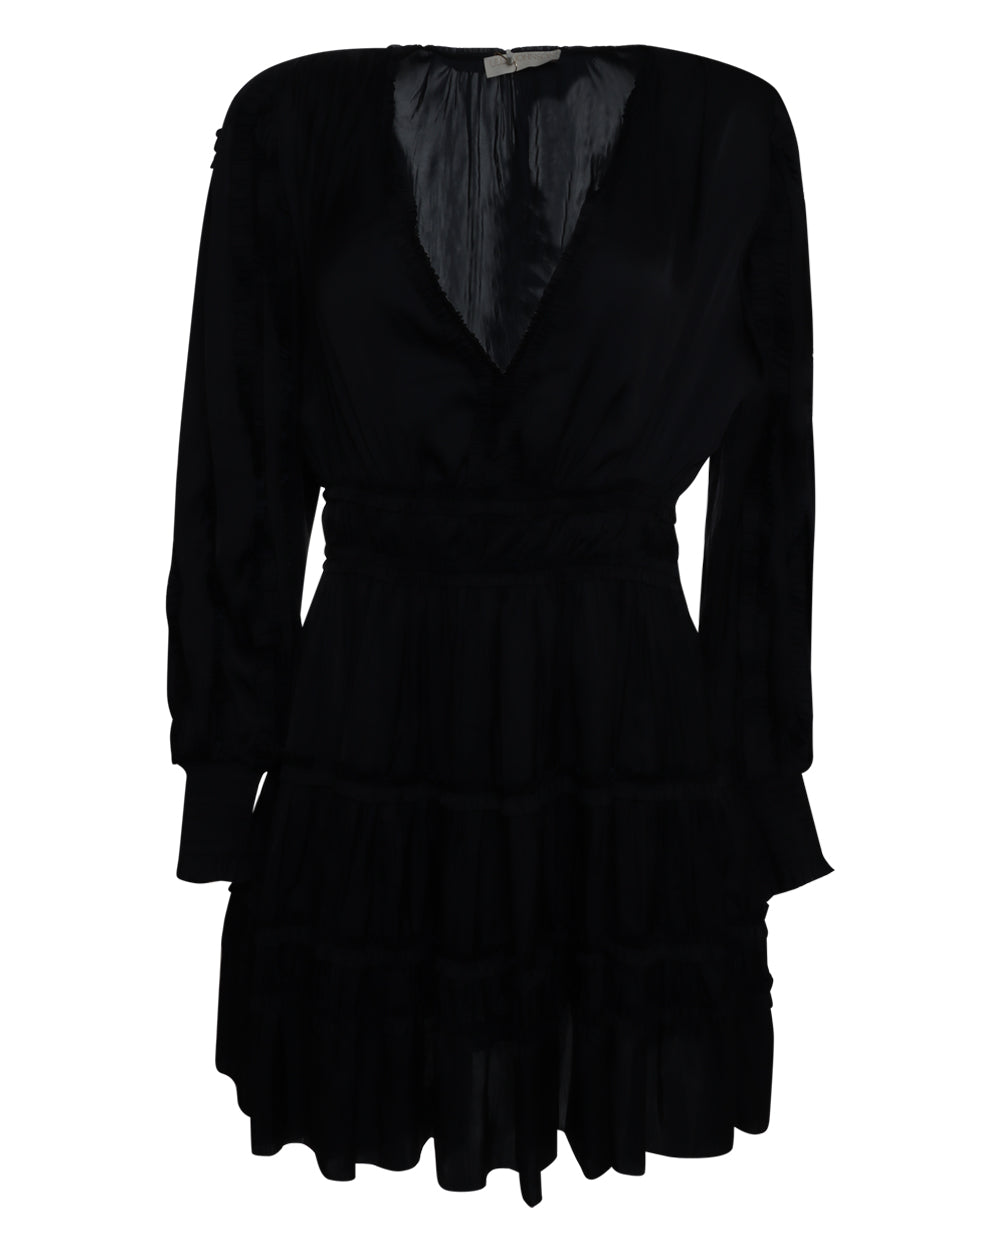 Ulla Johnson Gemma Dress in Noir – Stanley Korshak